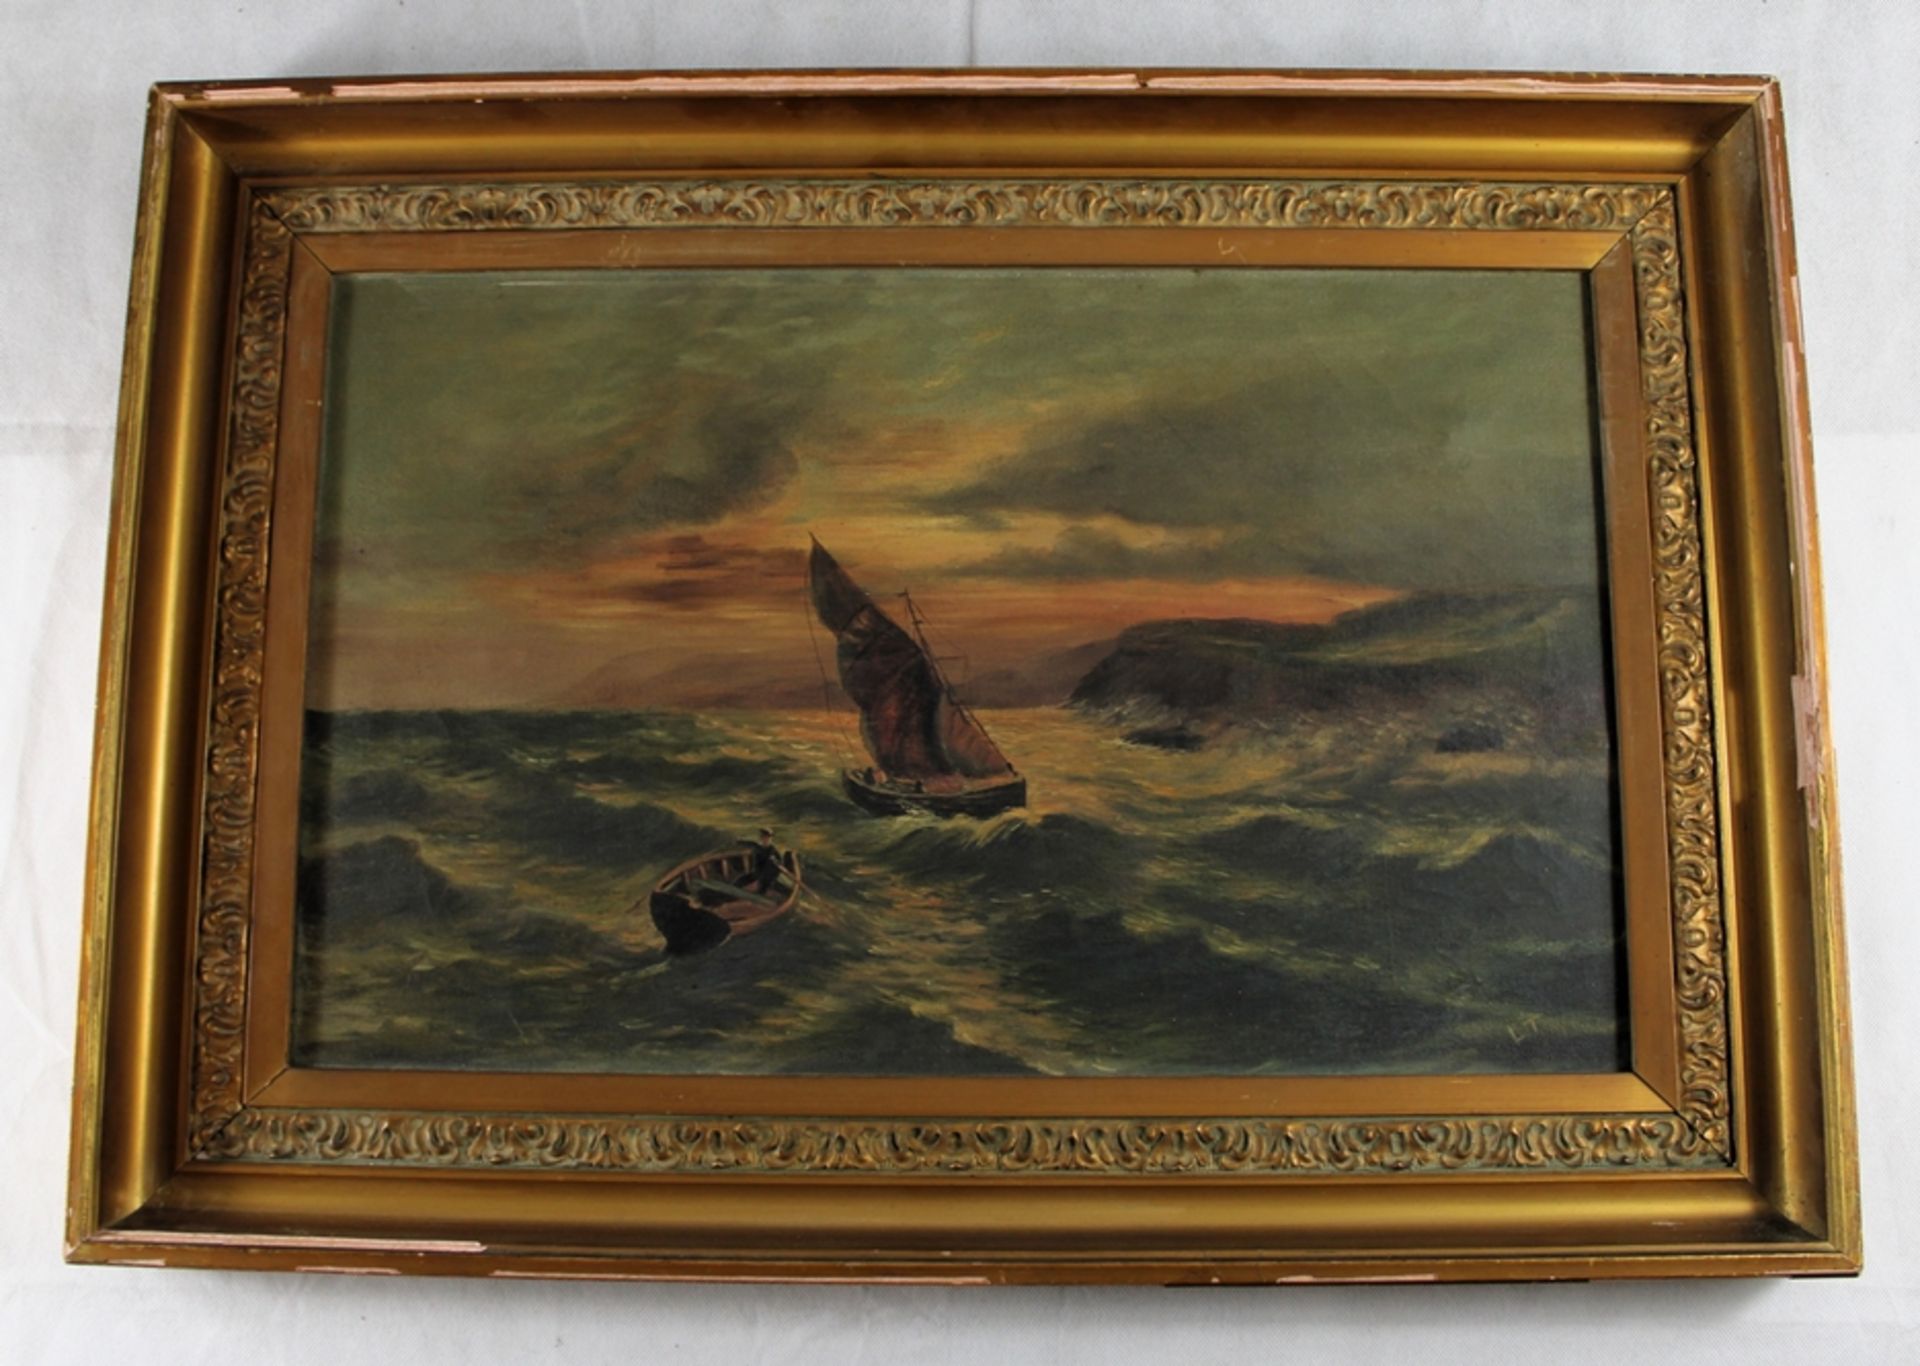 Gemälde "Auf rauher See" um 1900, rechts unten signiert "LT", Öl auf Leinwand, Rahmen tlw. beschädi